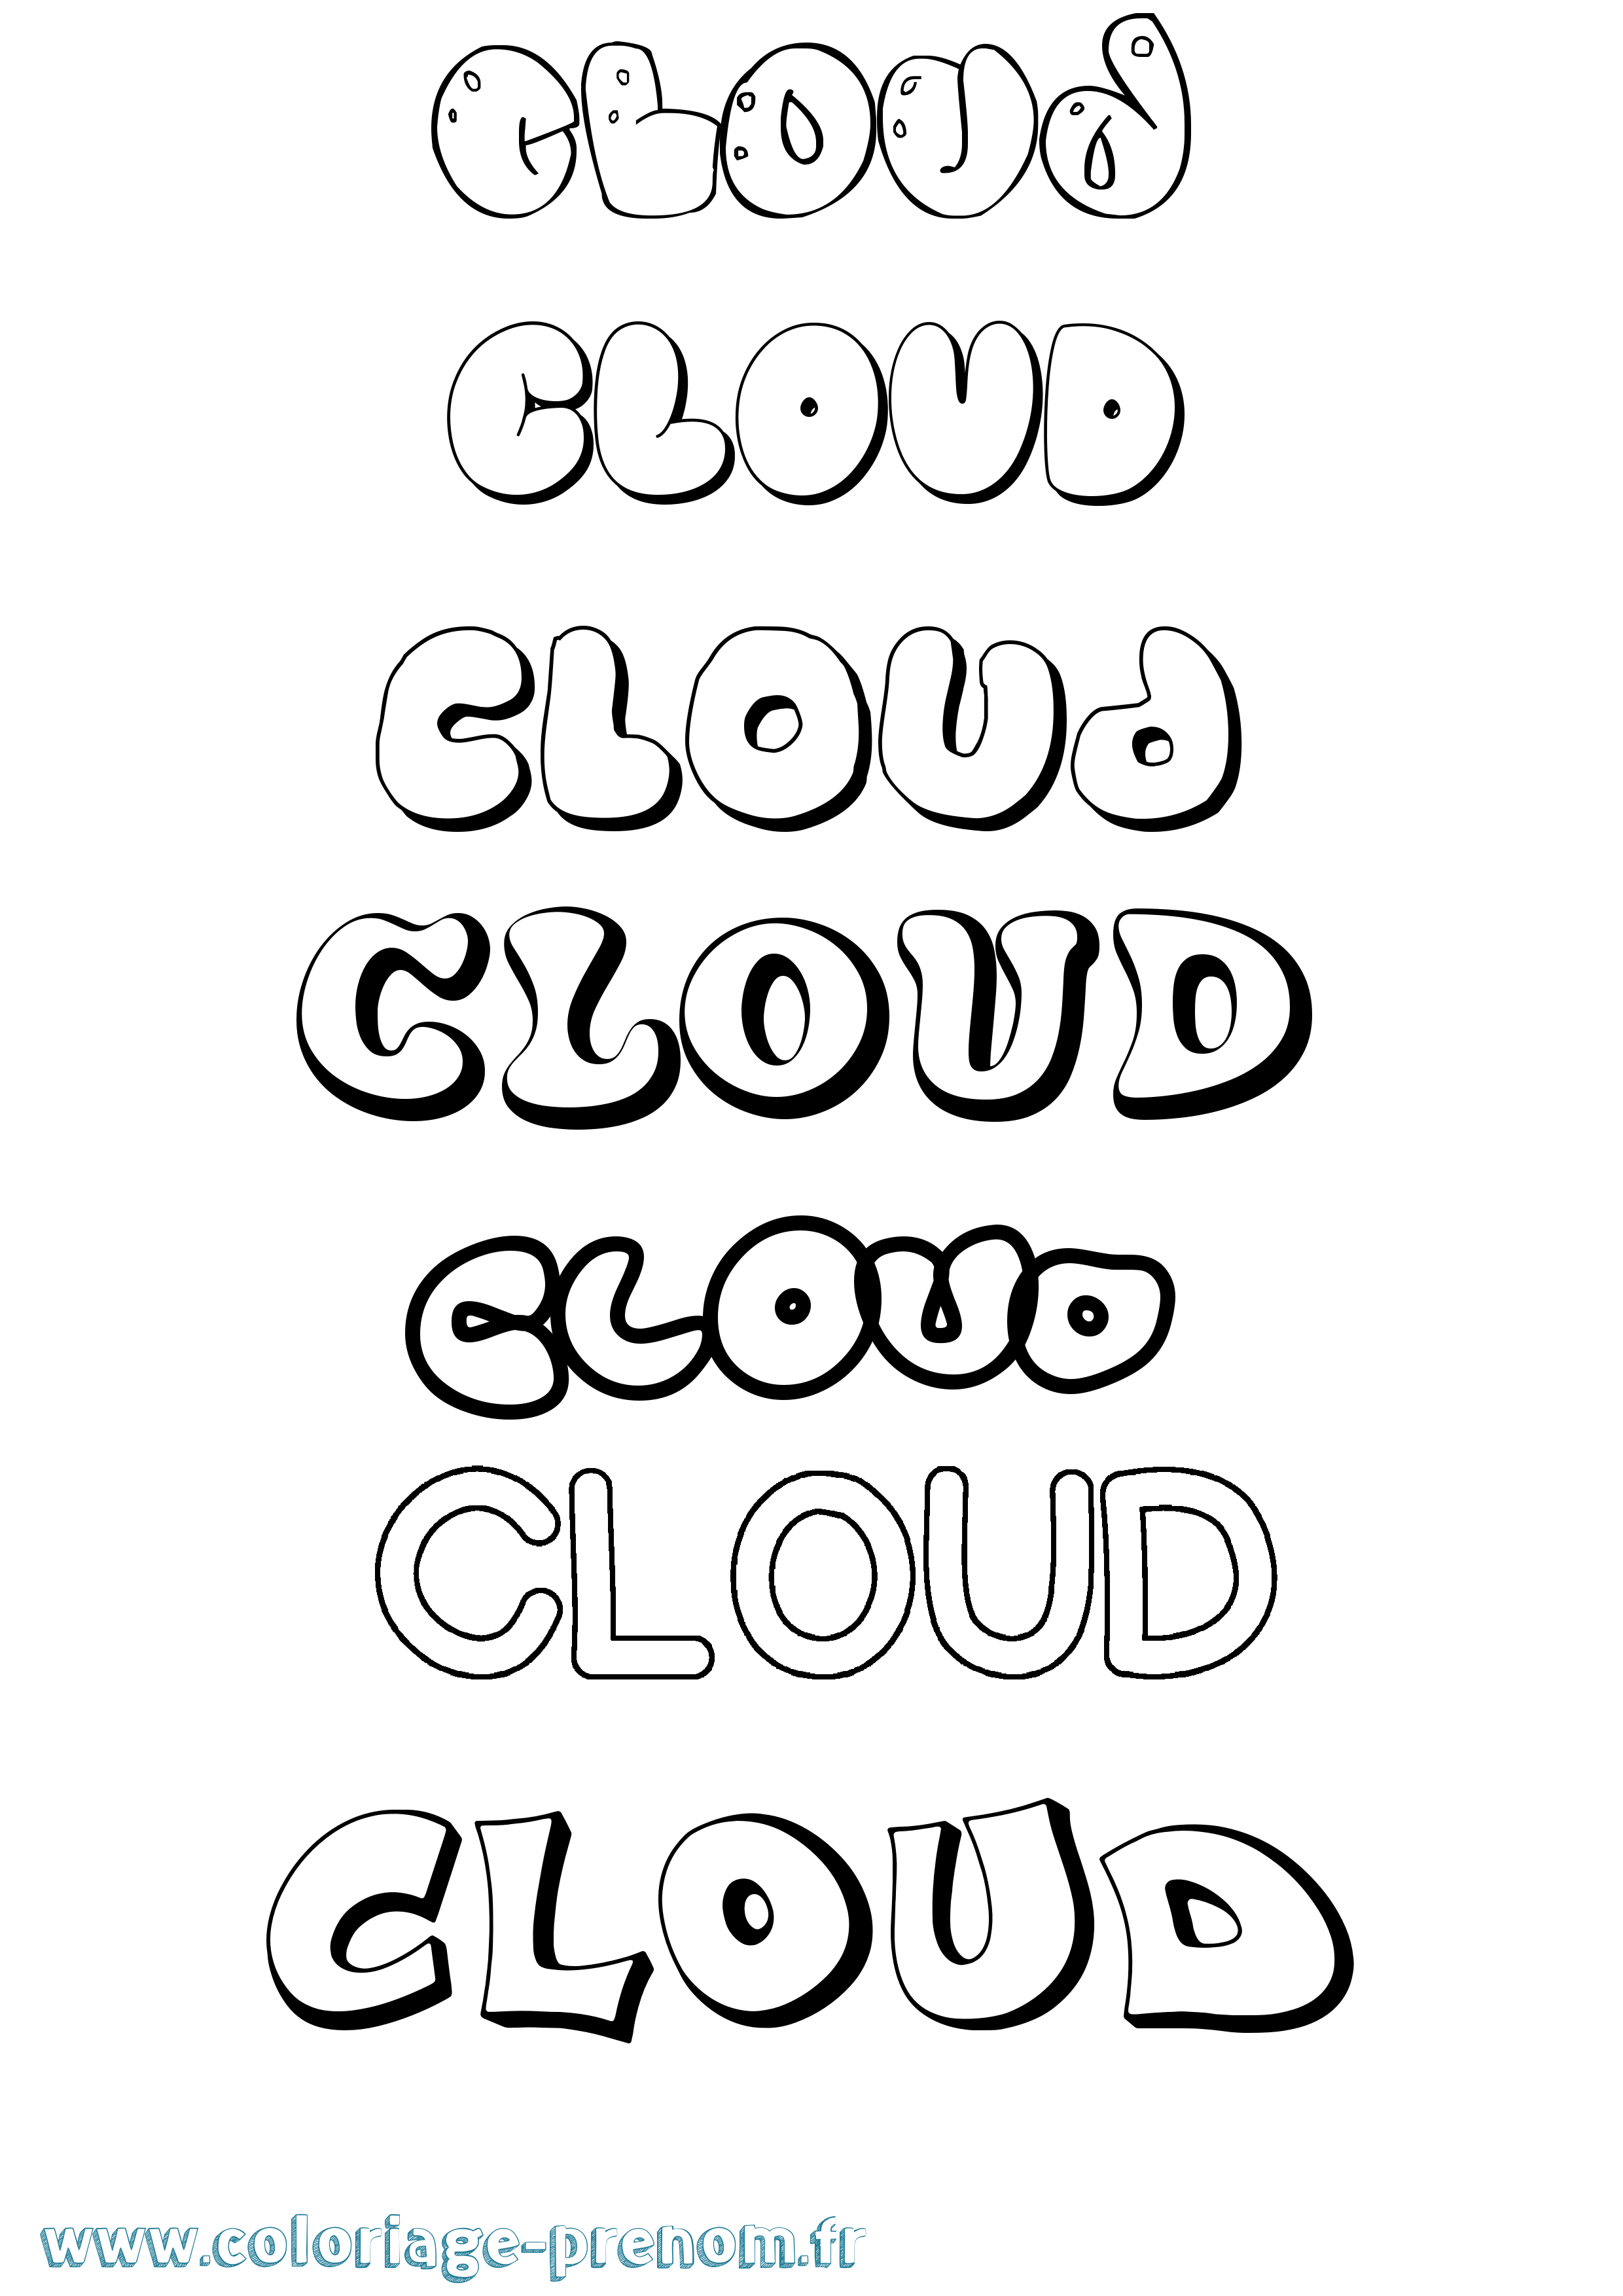 Coloriage prénom Cloud Bubble